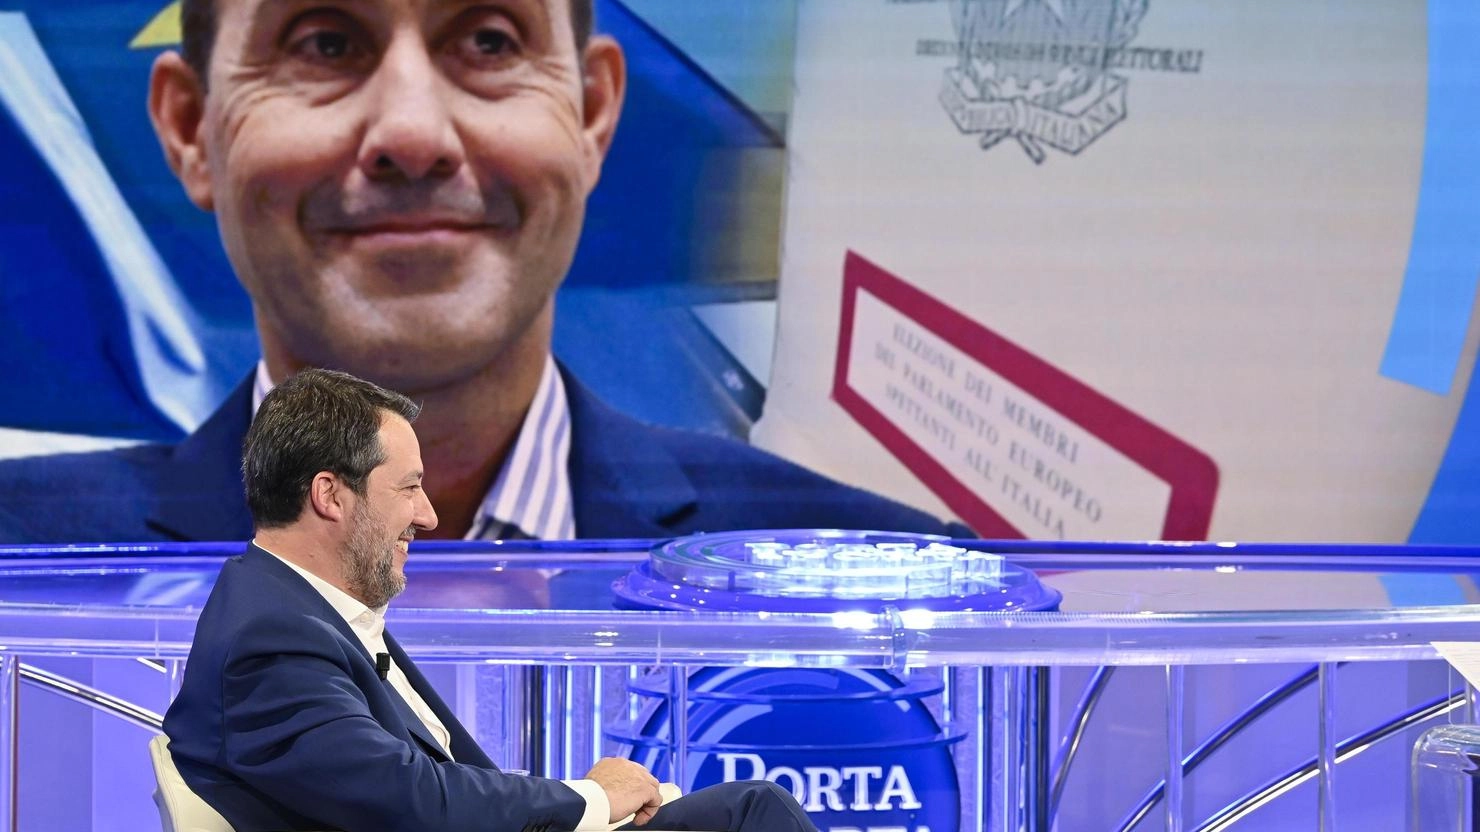 Il generale Vannacci accetta la sfida con la Lega, suscitando critiche interne e polemiche esterne. La sua candidatura rappresenta una mossa di Salvini a destra, mentre le opposizioni lo accusano di minare i valori antifascisti. La sua discesa in campo divide l'opinione pubblica a 43 giorni dalle elezioni europee.